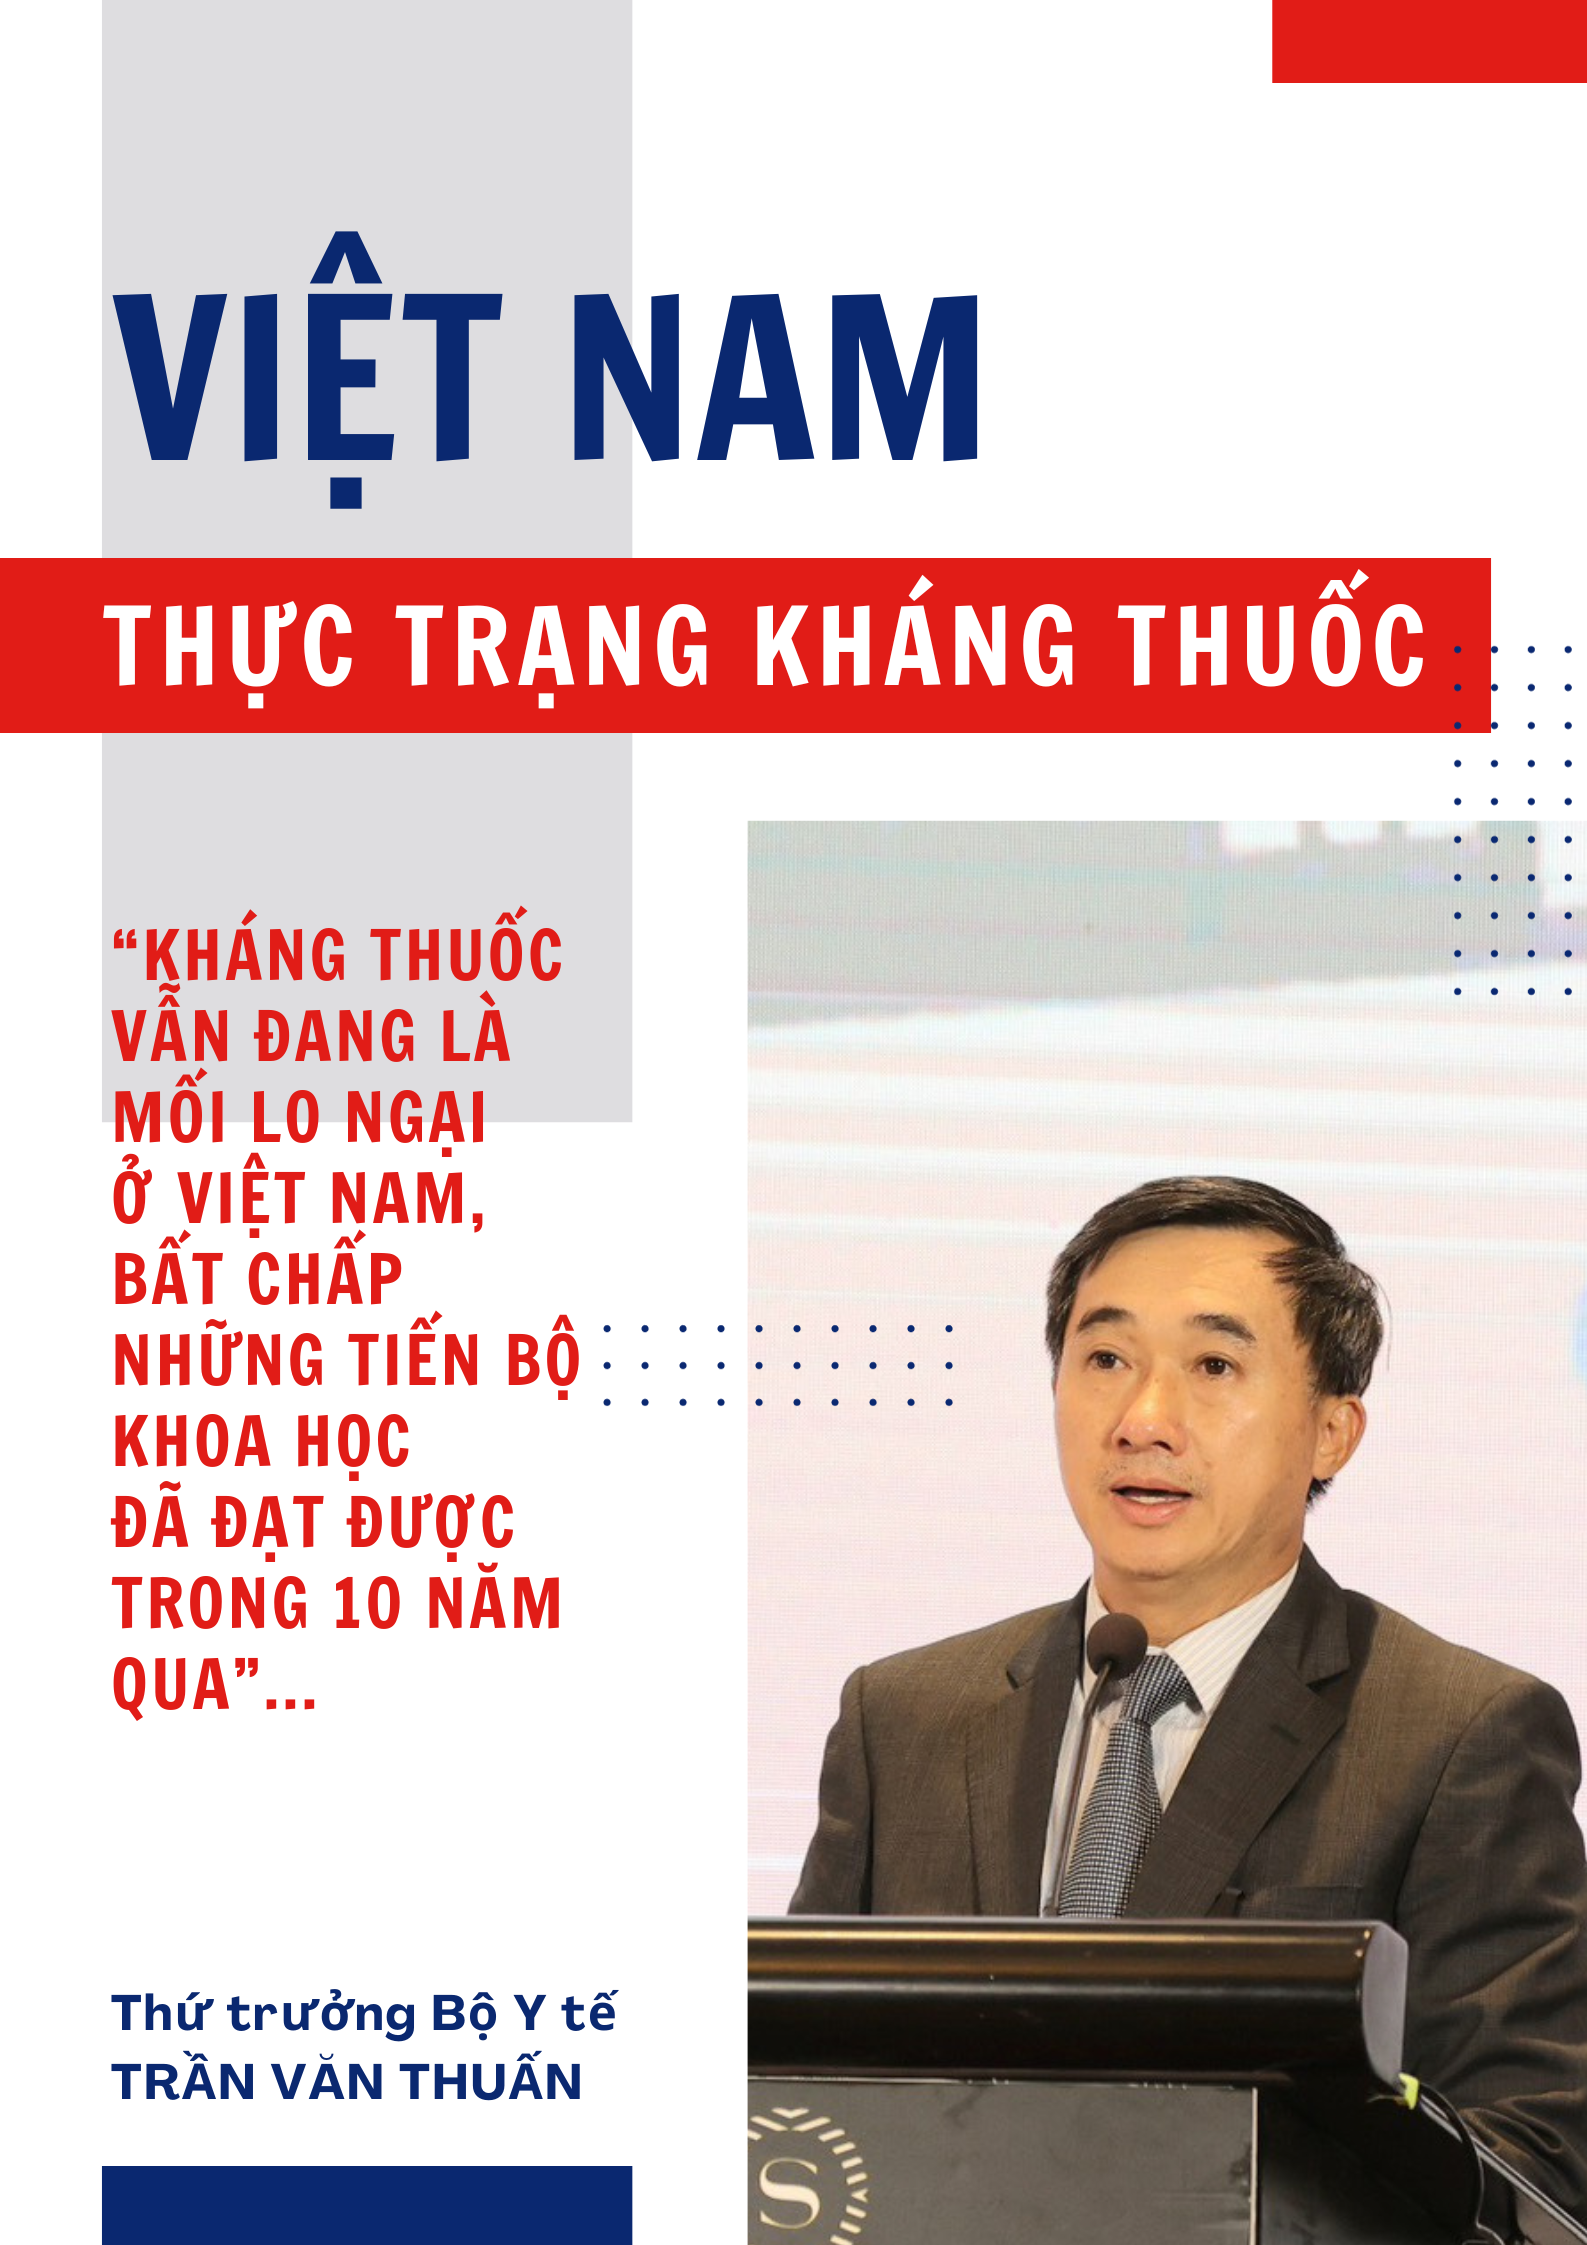 Mỗi chúng ta đều có bổn phận ngăn chặn kháng thuốc tại Việt Nam